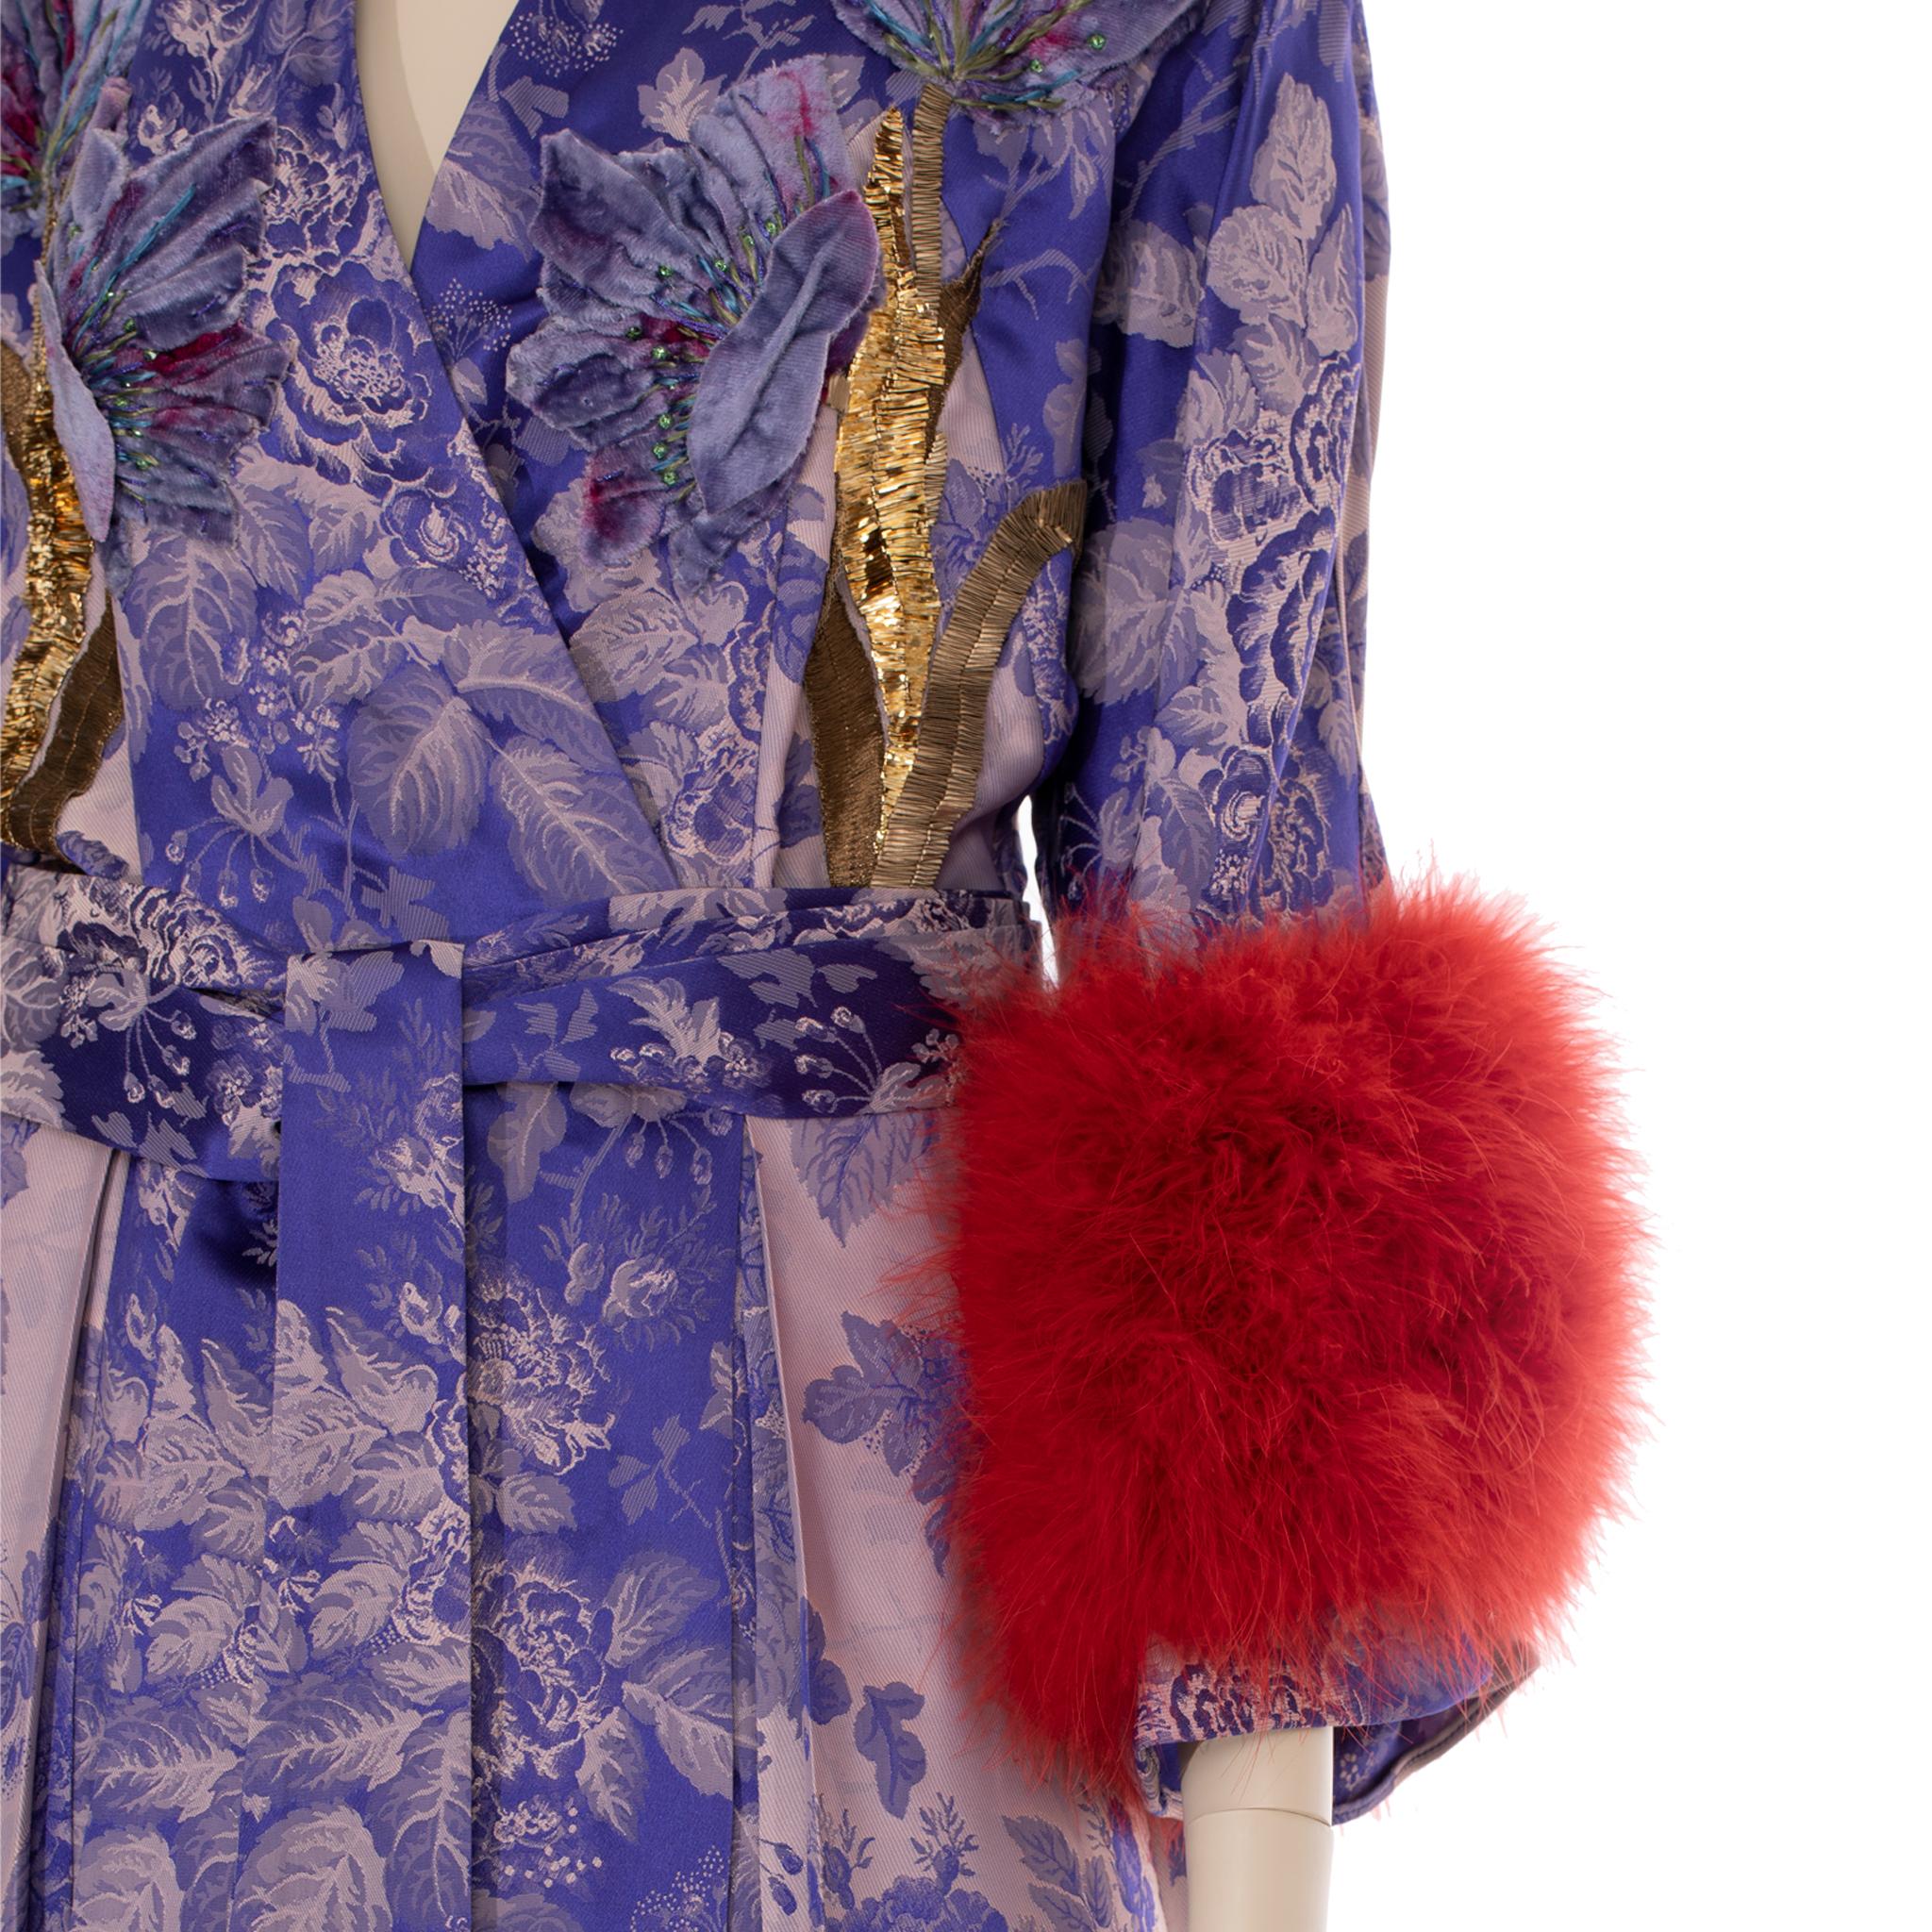 Werten Sie Ihre Garderobe mit dem Gucci Floral Jacquard Wickelkleid mit Straußenfedern auf. Dieses Kleid ist luxuriös mit zarten Straußenfedern verziert und verleiht Ihnen einen Look, der Sie stilvoll vom Tag zum Abend begleitet. Es ist ein